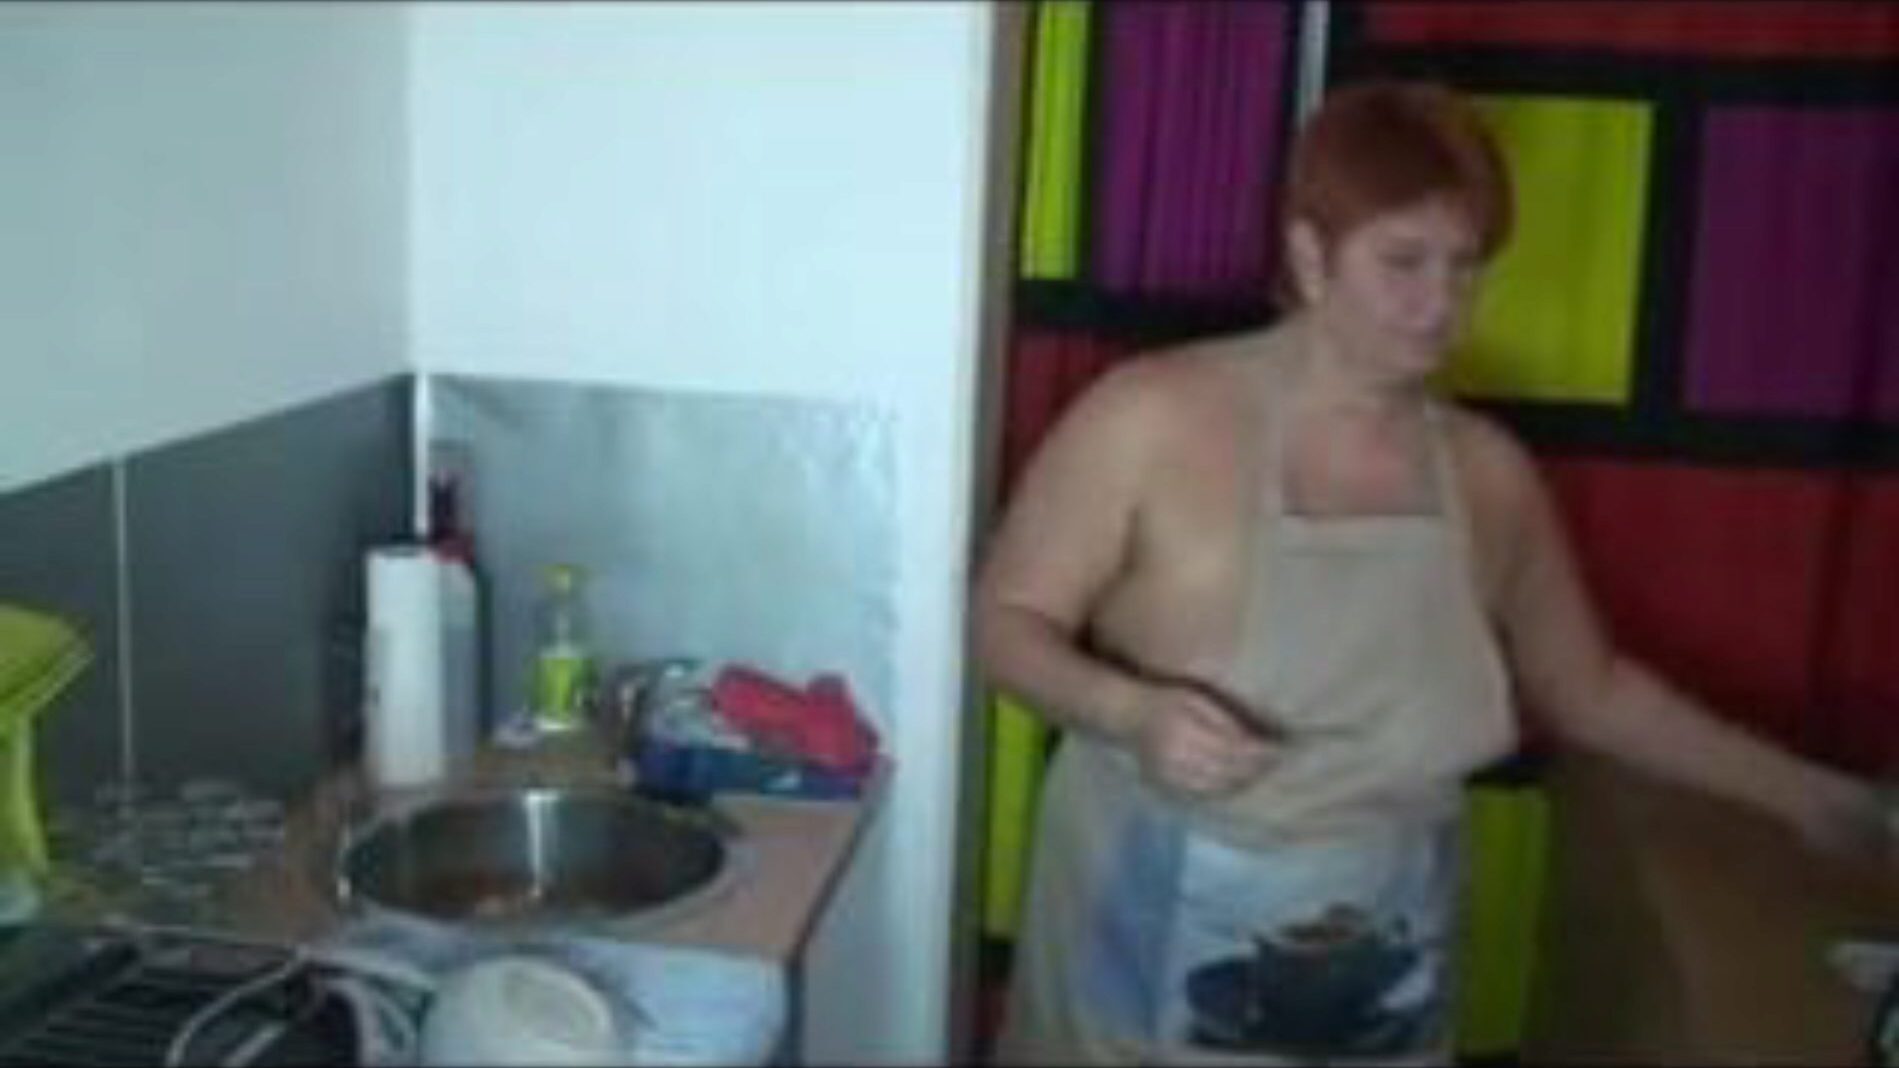 amikor mosogat a konyhában, ingyenes pornó 55: xhamster nézni, ha mosogat a konyhai klipben az xhamsteren, az óriási szexcsatorna webhelyén, ahol rengeteg ingyenes német legforróbb és hangosabb pornó videó található